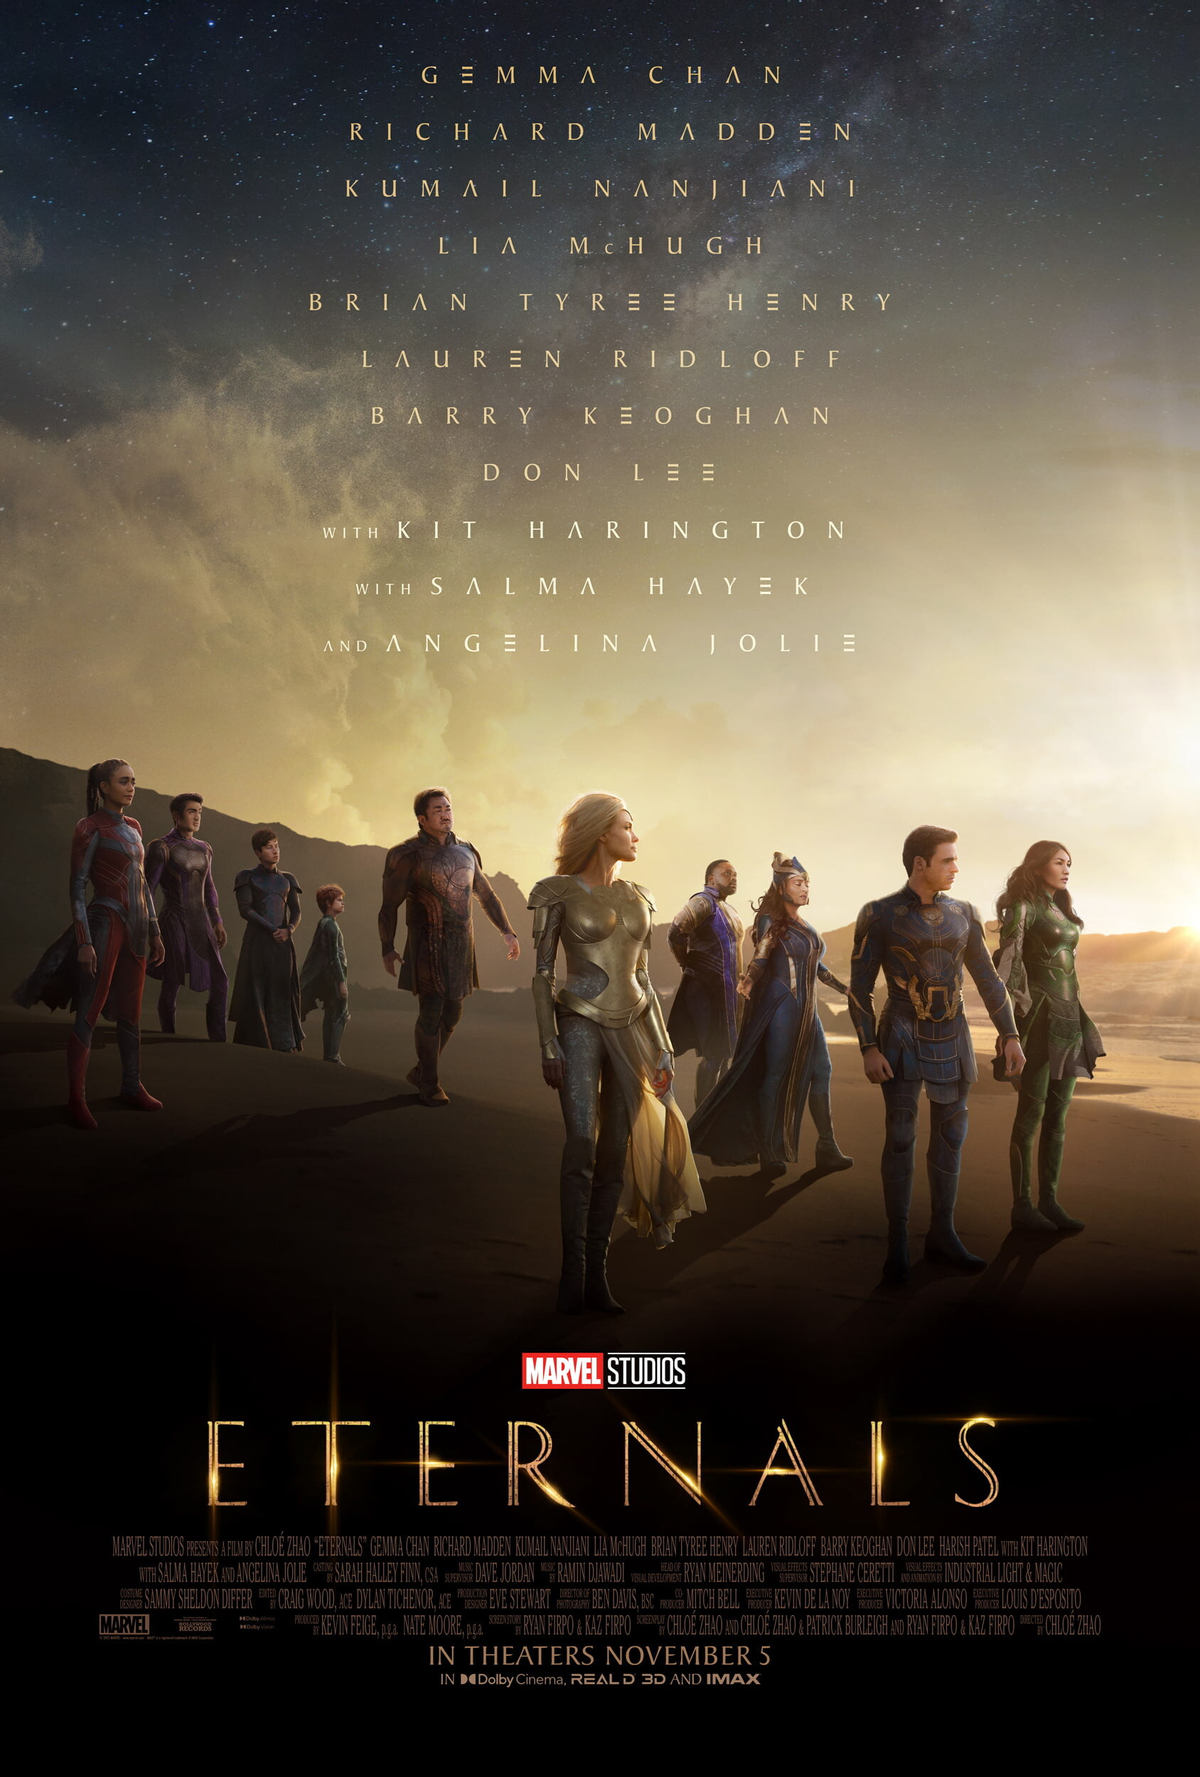 Финальный трейлер «Вечных» - кинокомикса Marvel о целестиалах и их созданиях на Земле